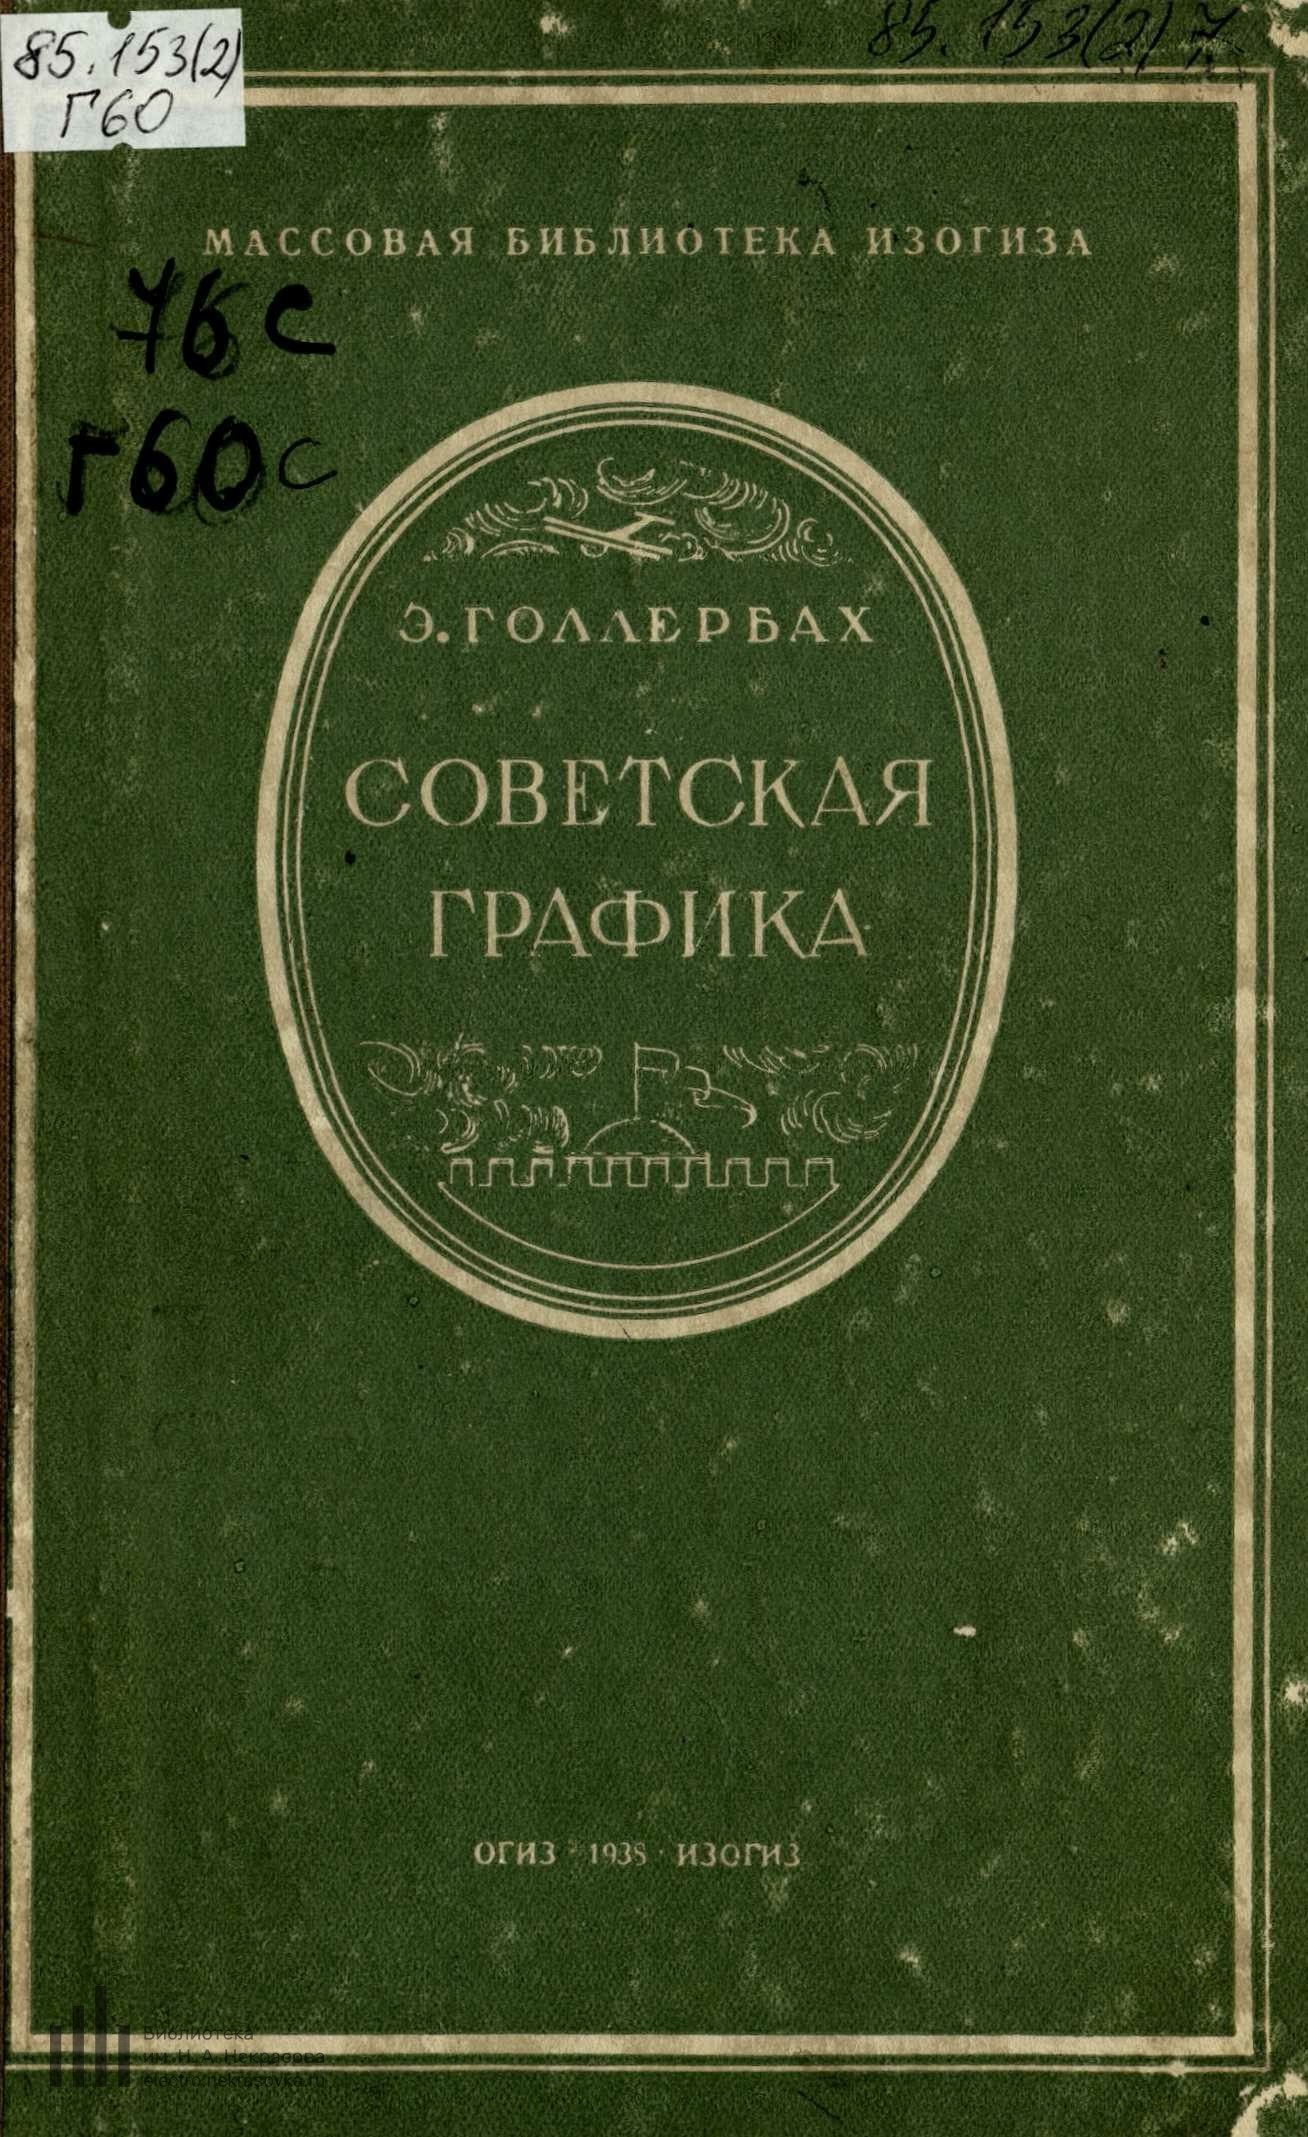 Советская графика / Э. Голлербах. — [Москва] : ОГИЗ—ИЗОГИЗ, 1938